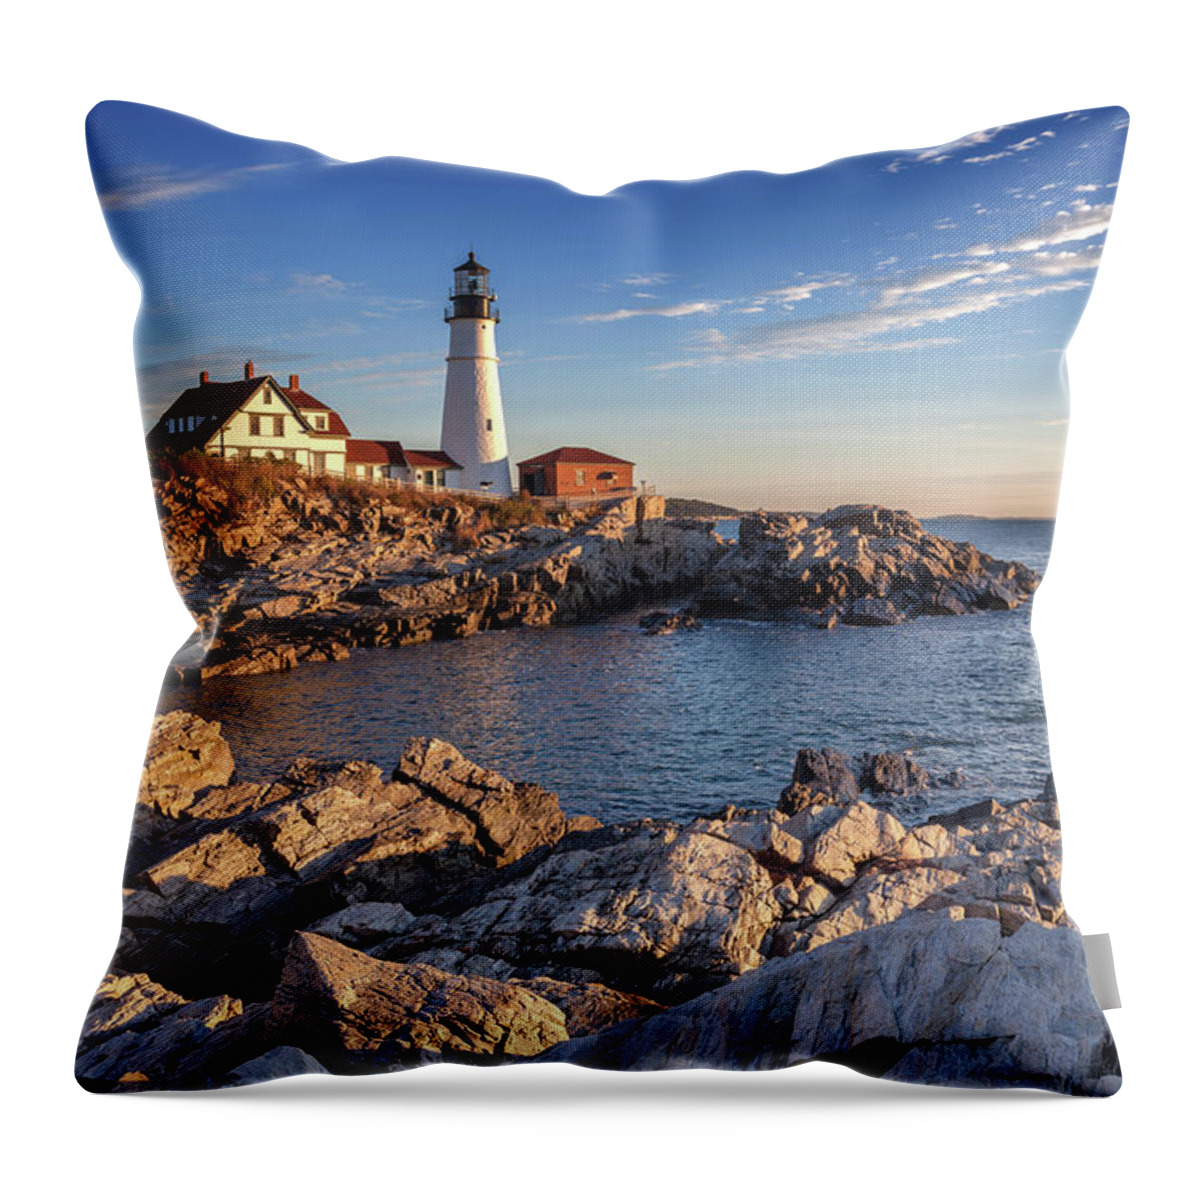 Lighthouse Throw Pillow featuring the photograph Portland Head Light by Cliff Wassmann